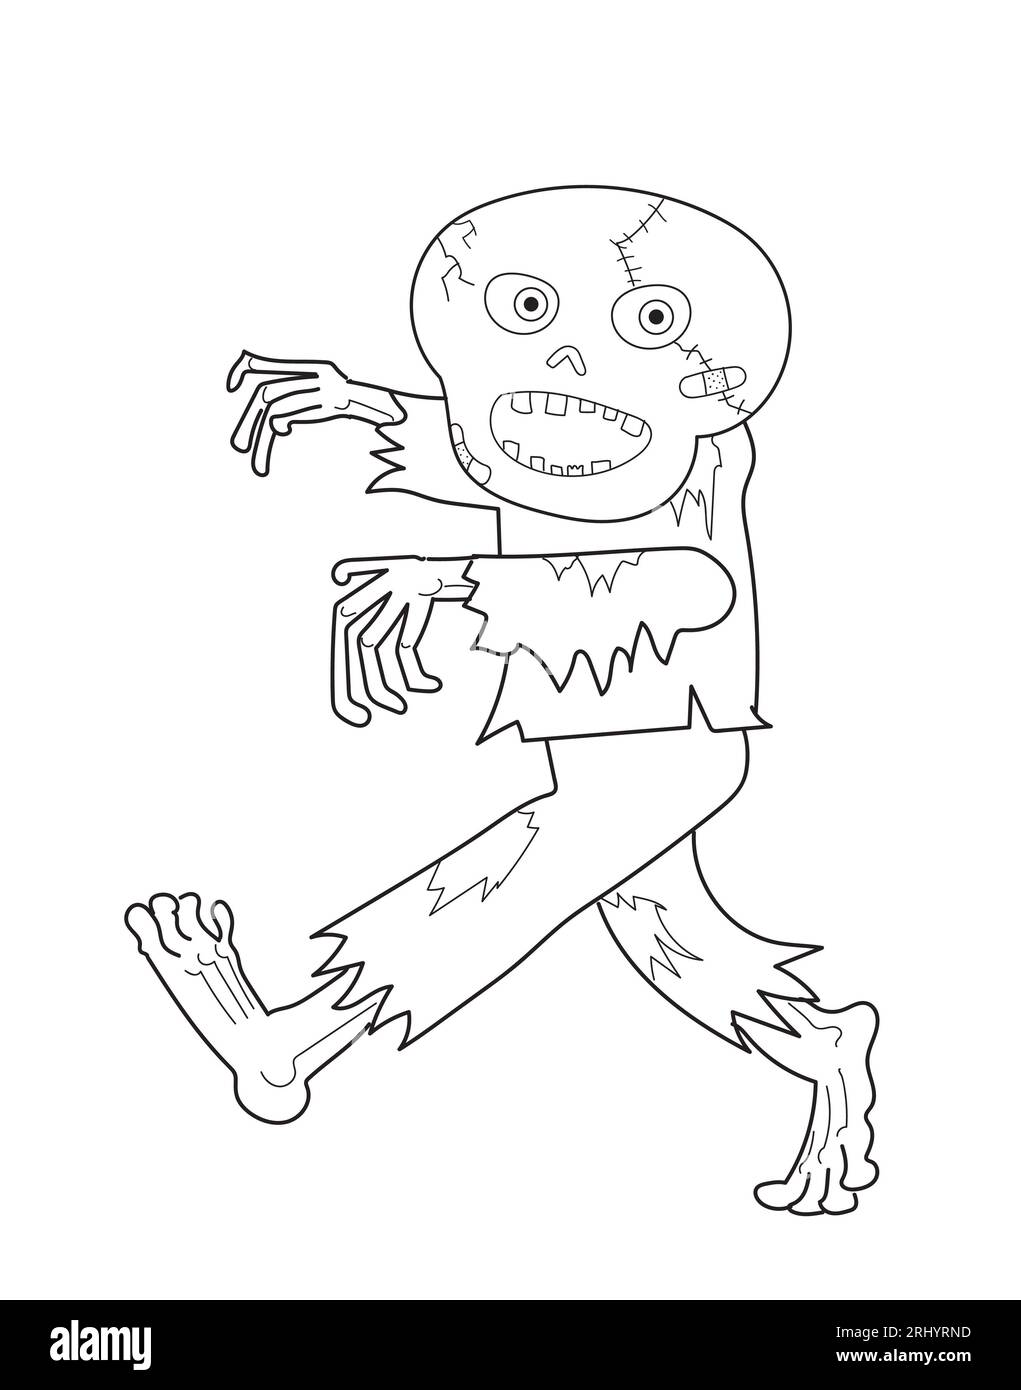 Dessin drôle de dessin animé d'un fantôme effrayant heureux zombie marchant, noir et blanc. Banque D'Images